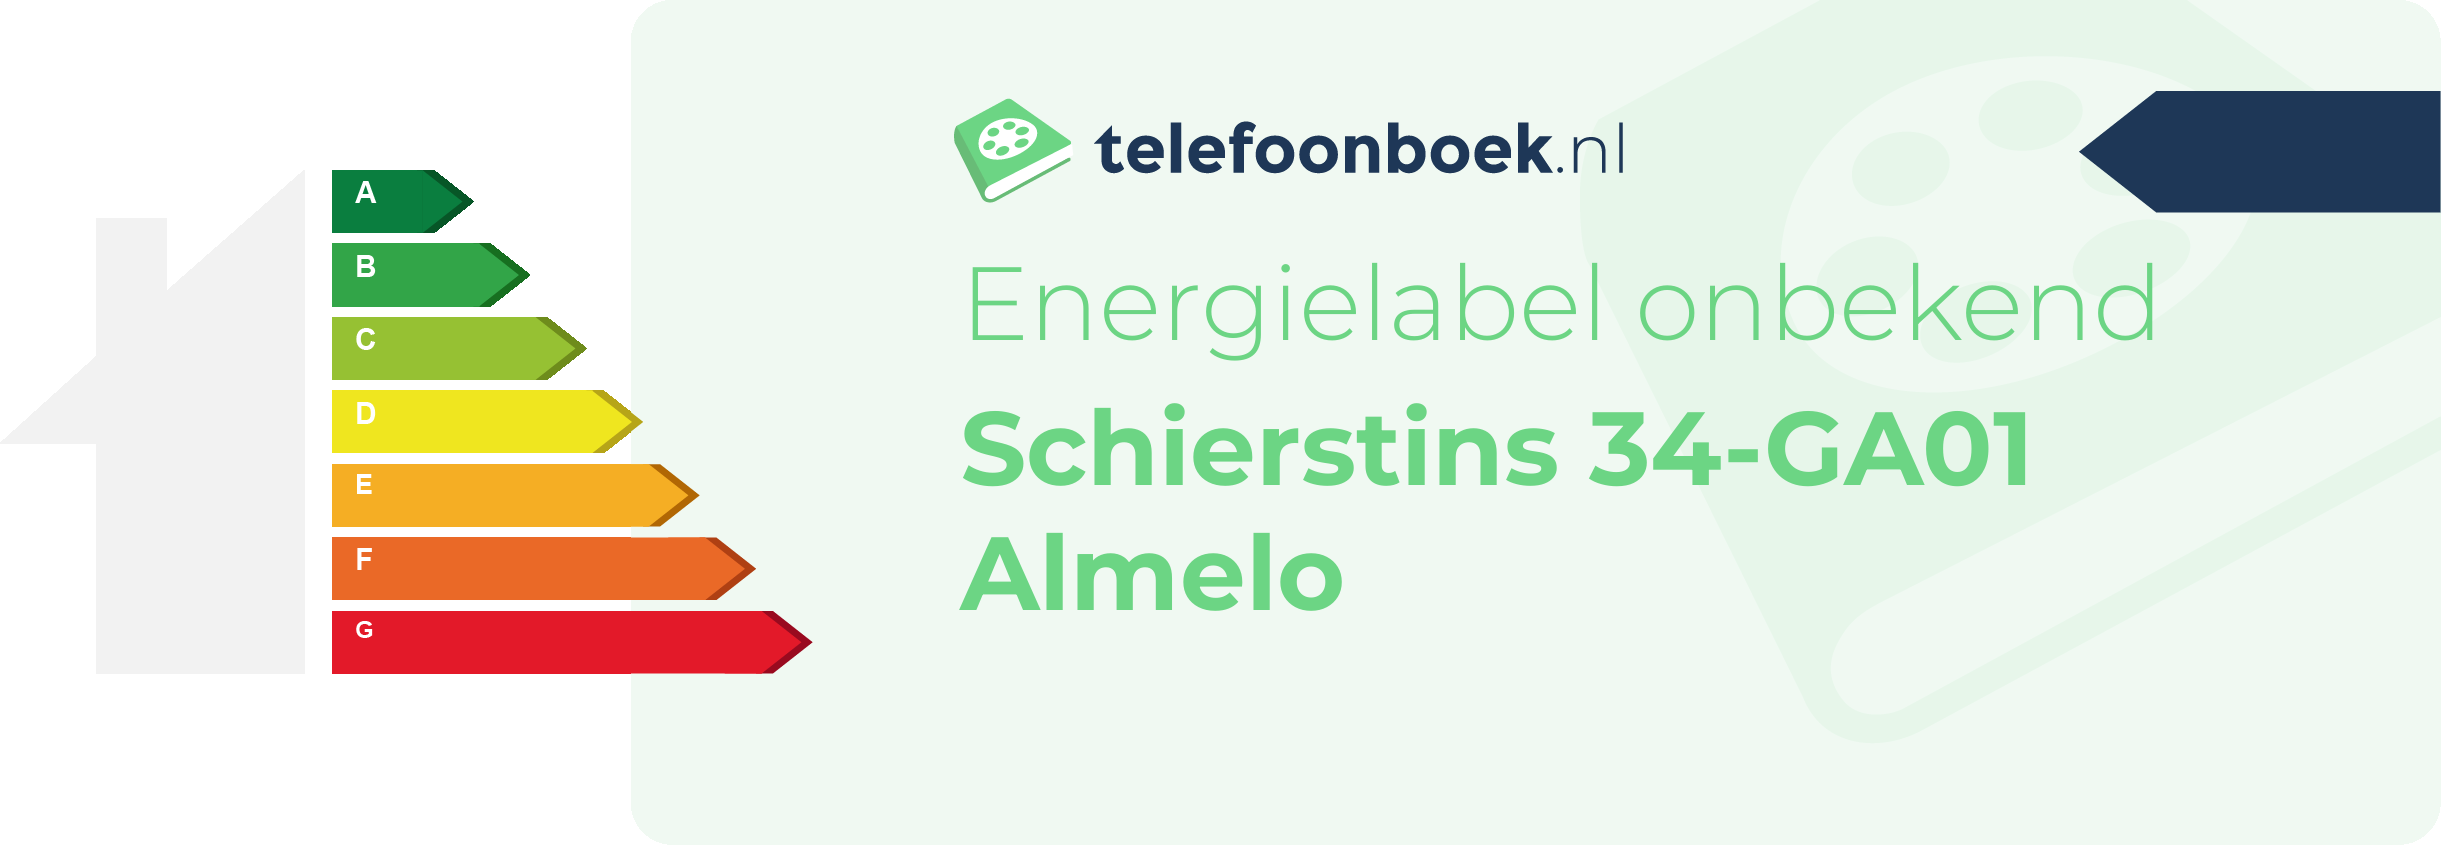 Energielabel Schierstins 34-GA01 Almelo